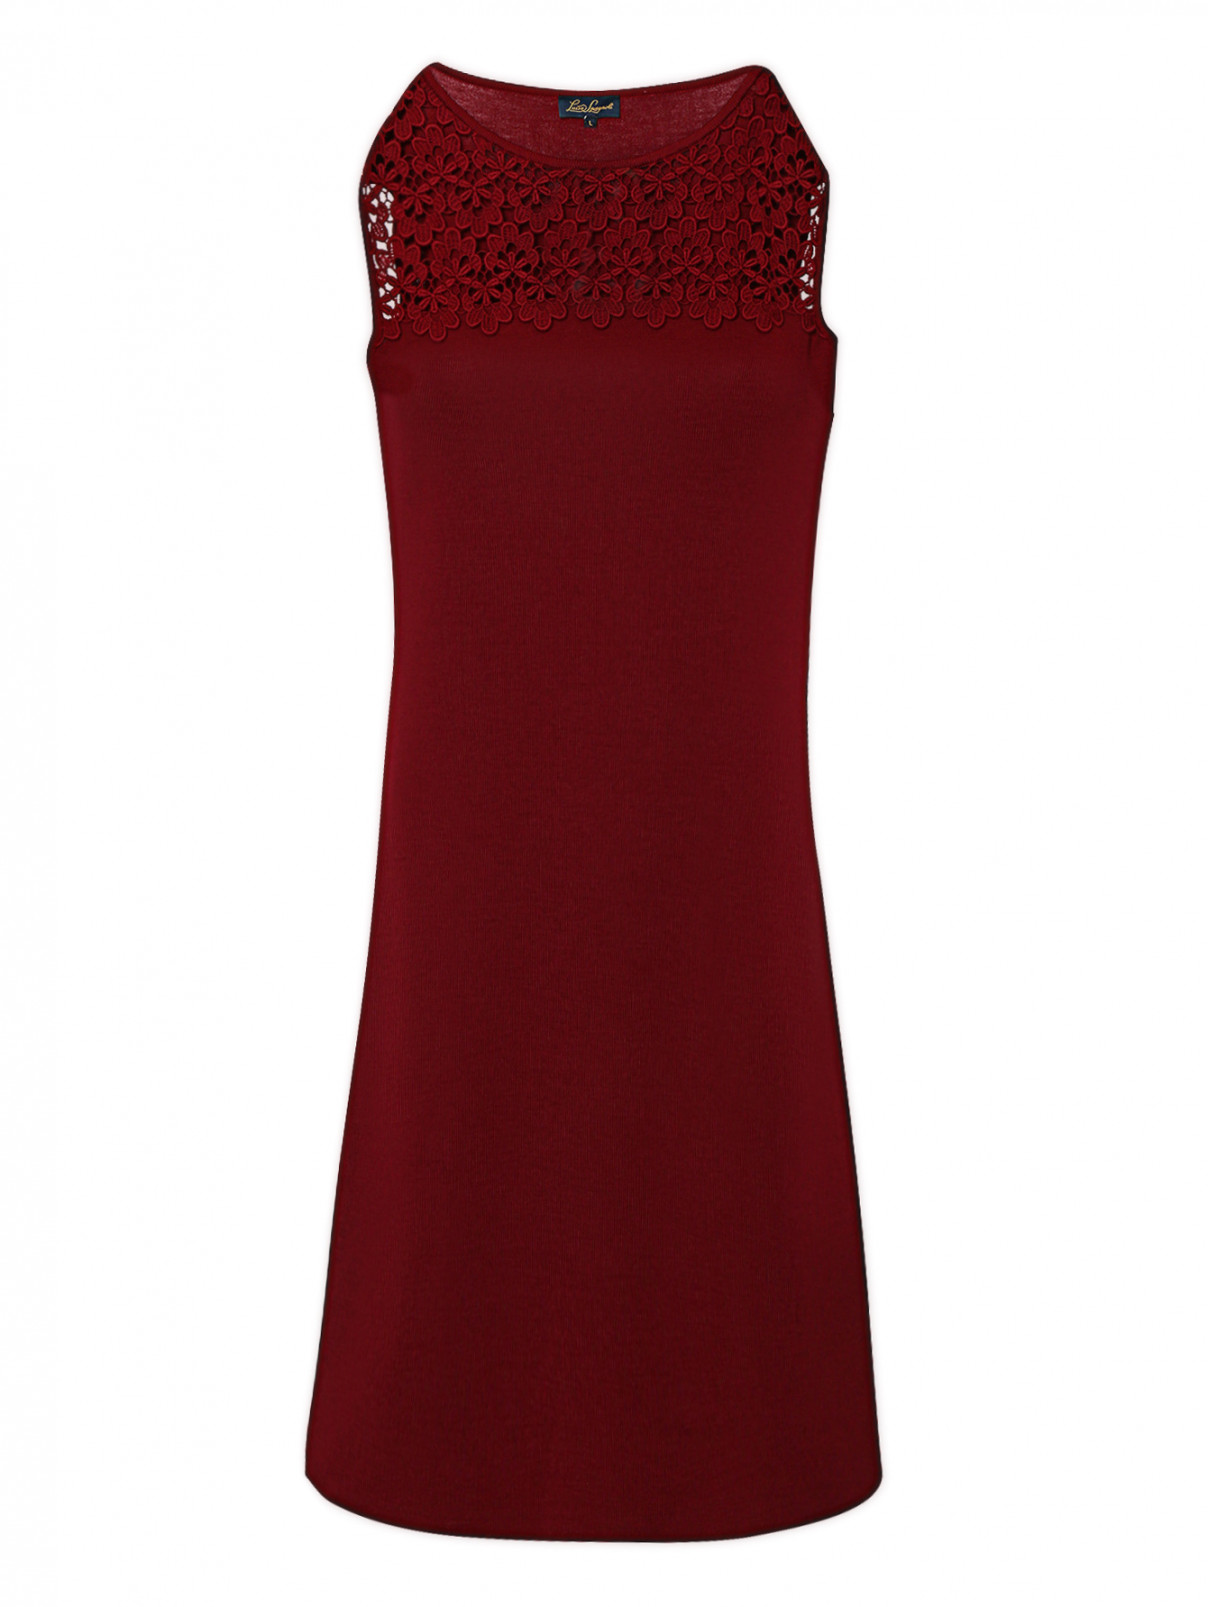 Платье из шерсти с кружевной аппликацией Luisa Spagnoli  –  Общий вид  – Цвет:  Красный